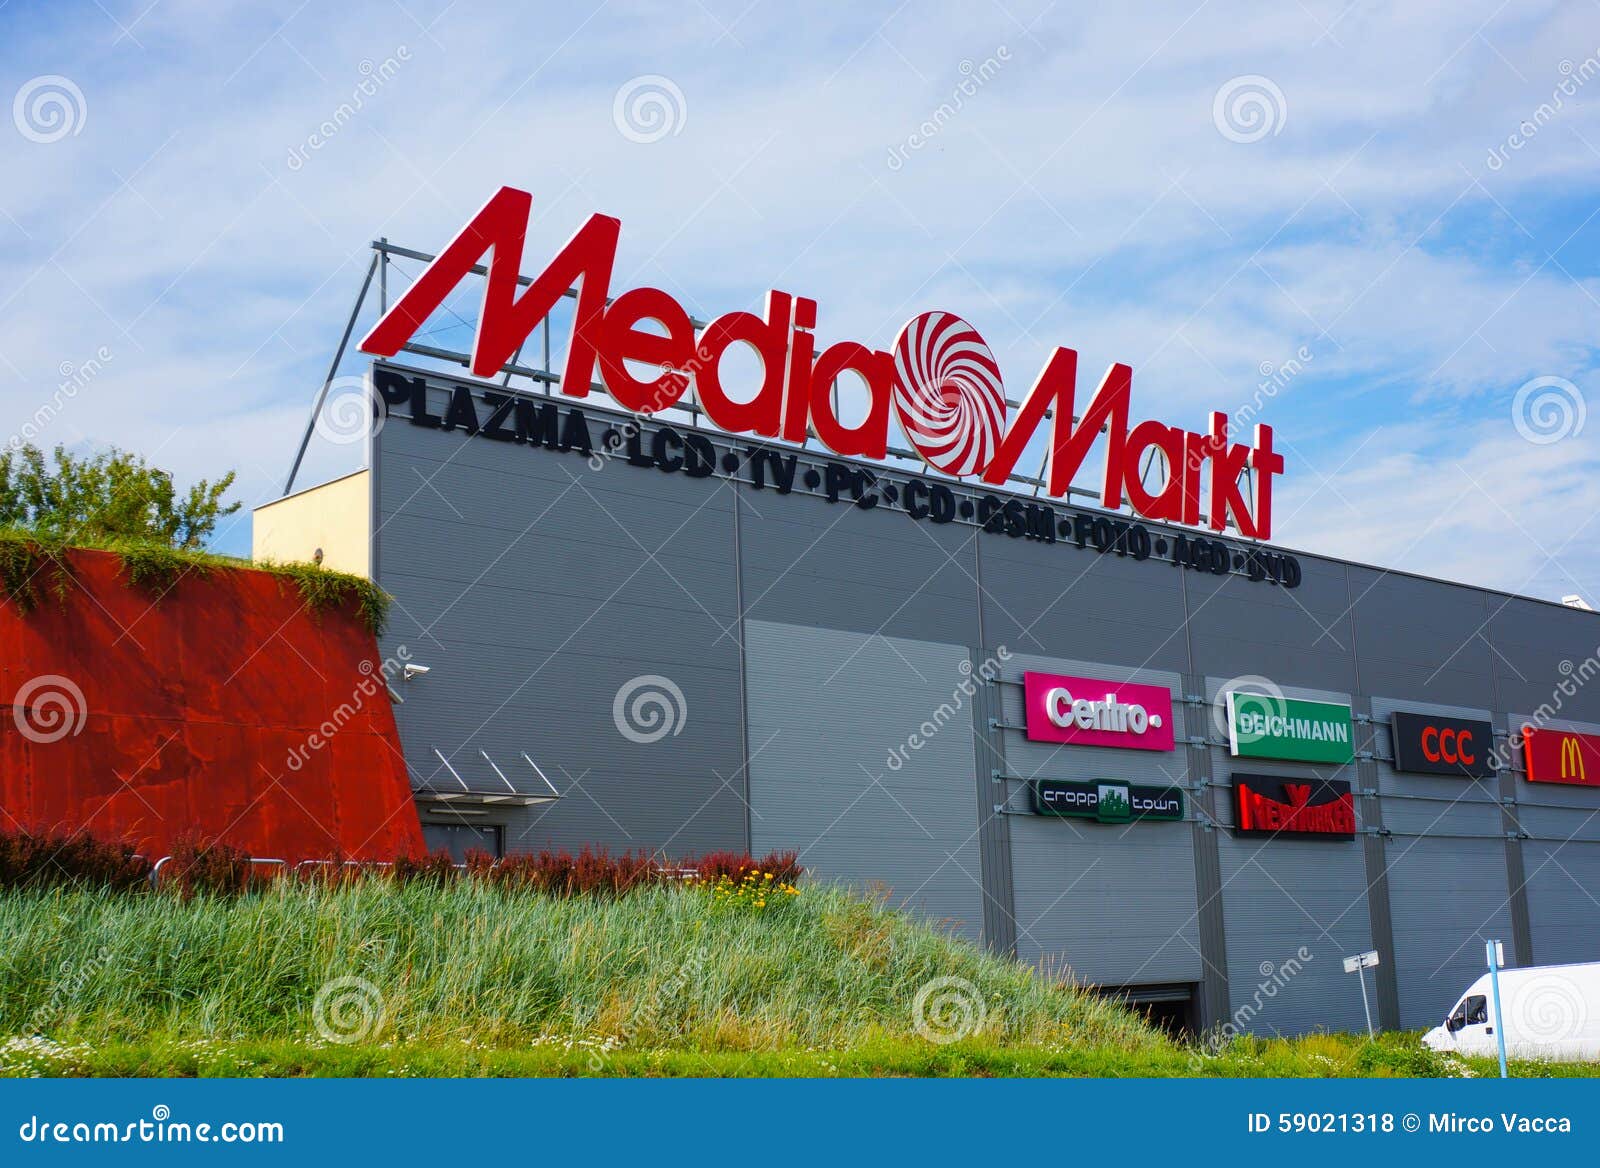 Media Markt, Shopping